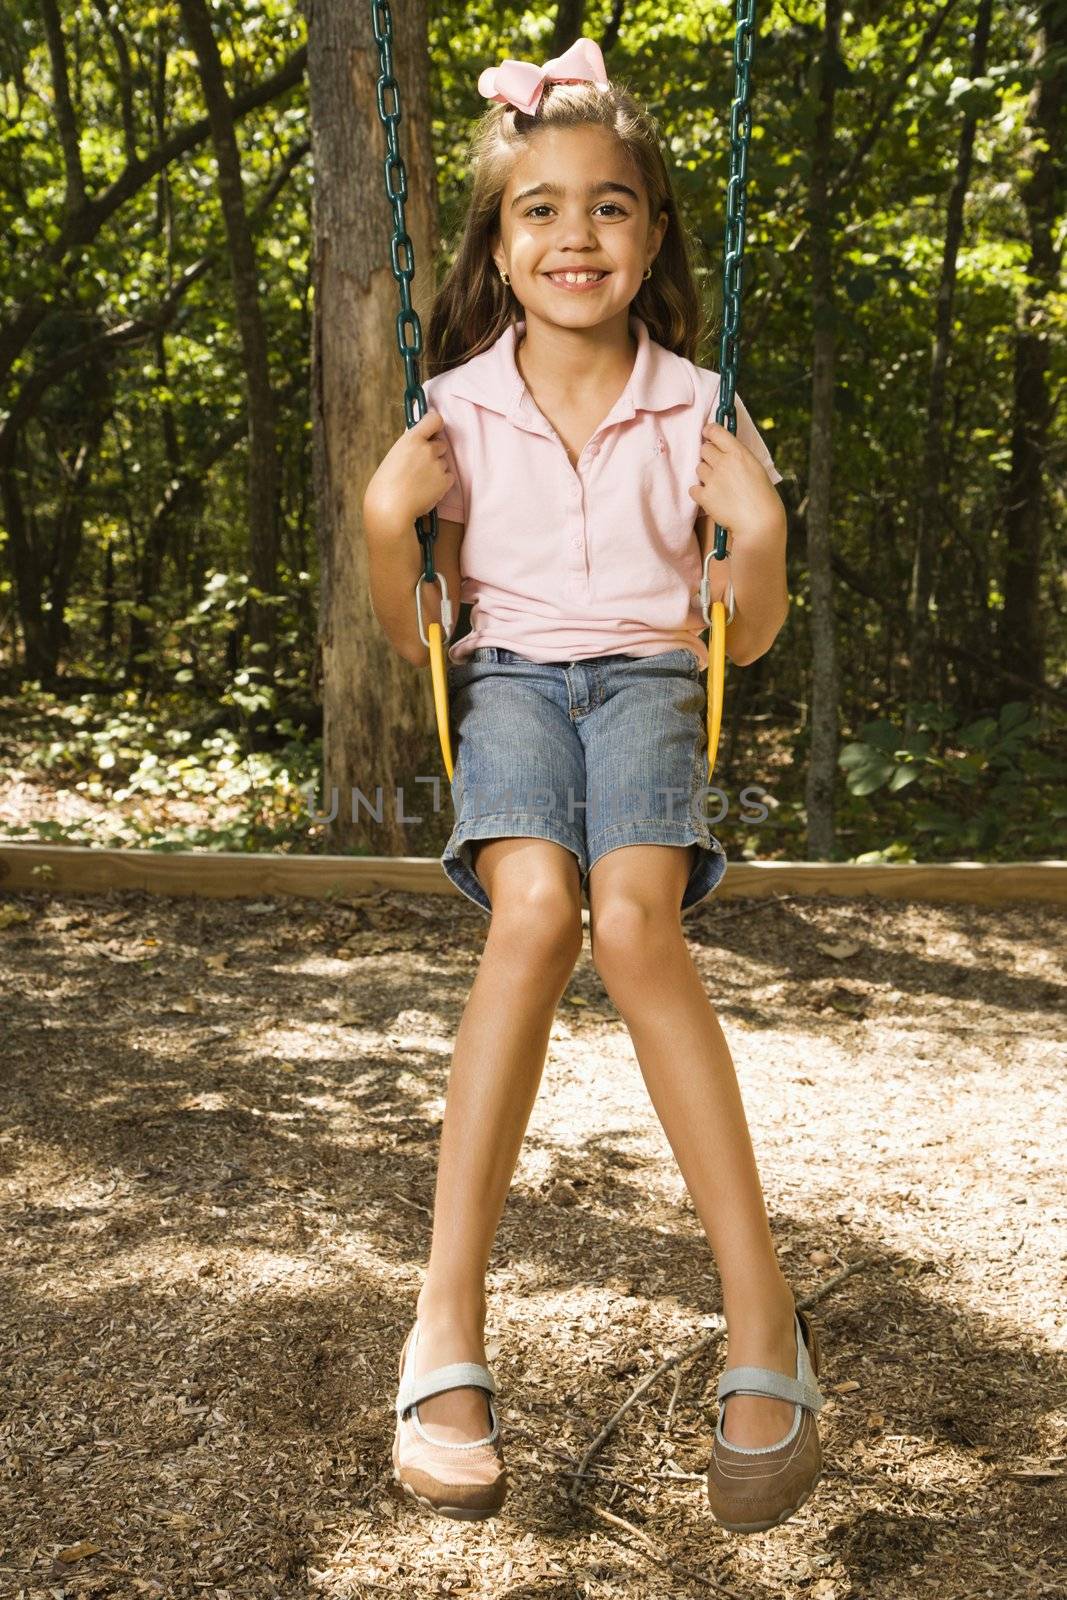 Hispanic girl sitting on playground swing smiling at viewer.